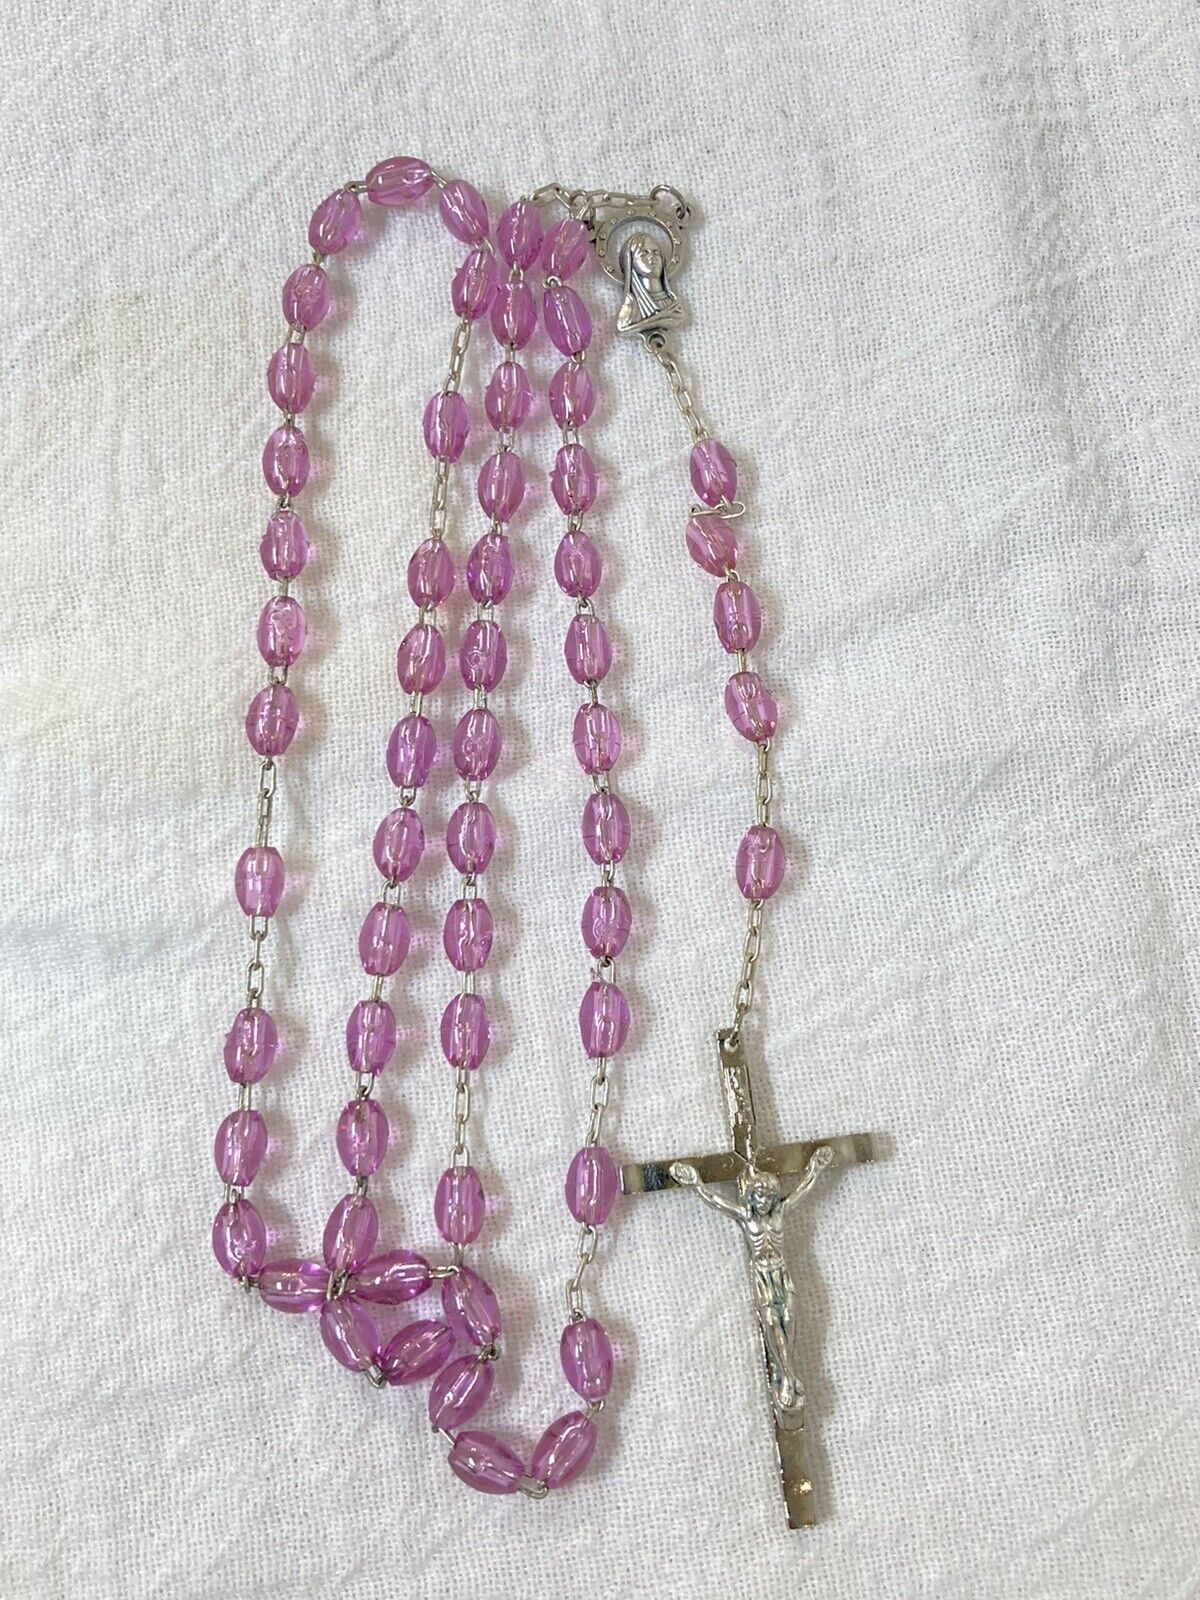 Vintage Catholic Rosary Beaded Religious Christianity Pink beads Crucifix-Italy